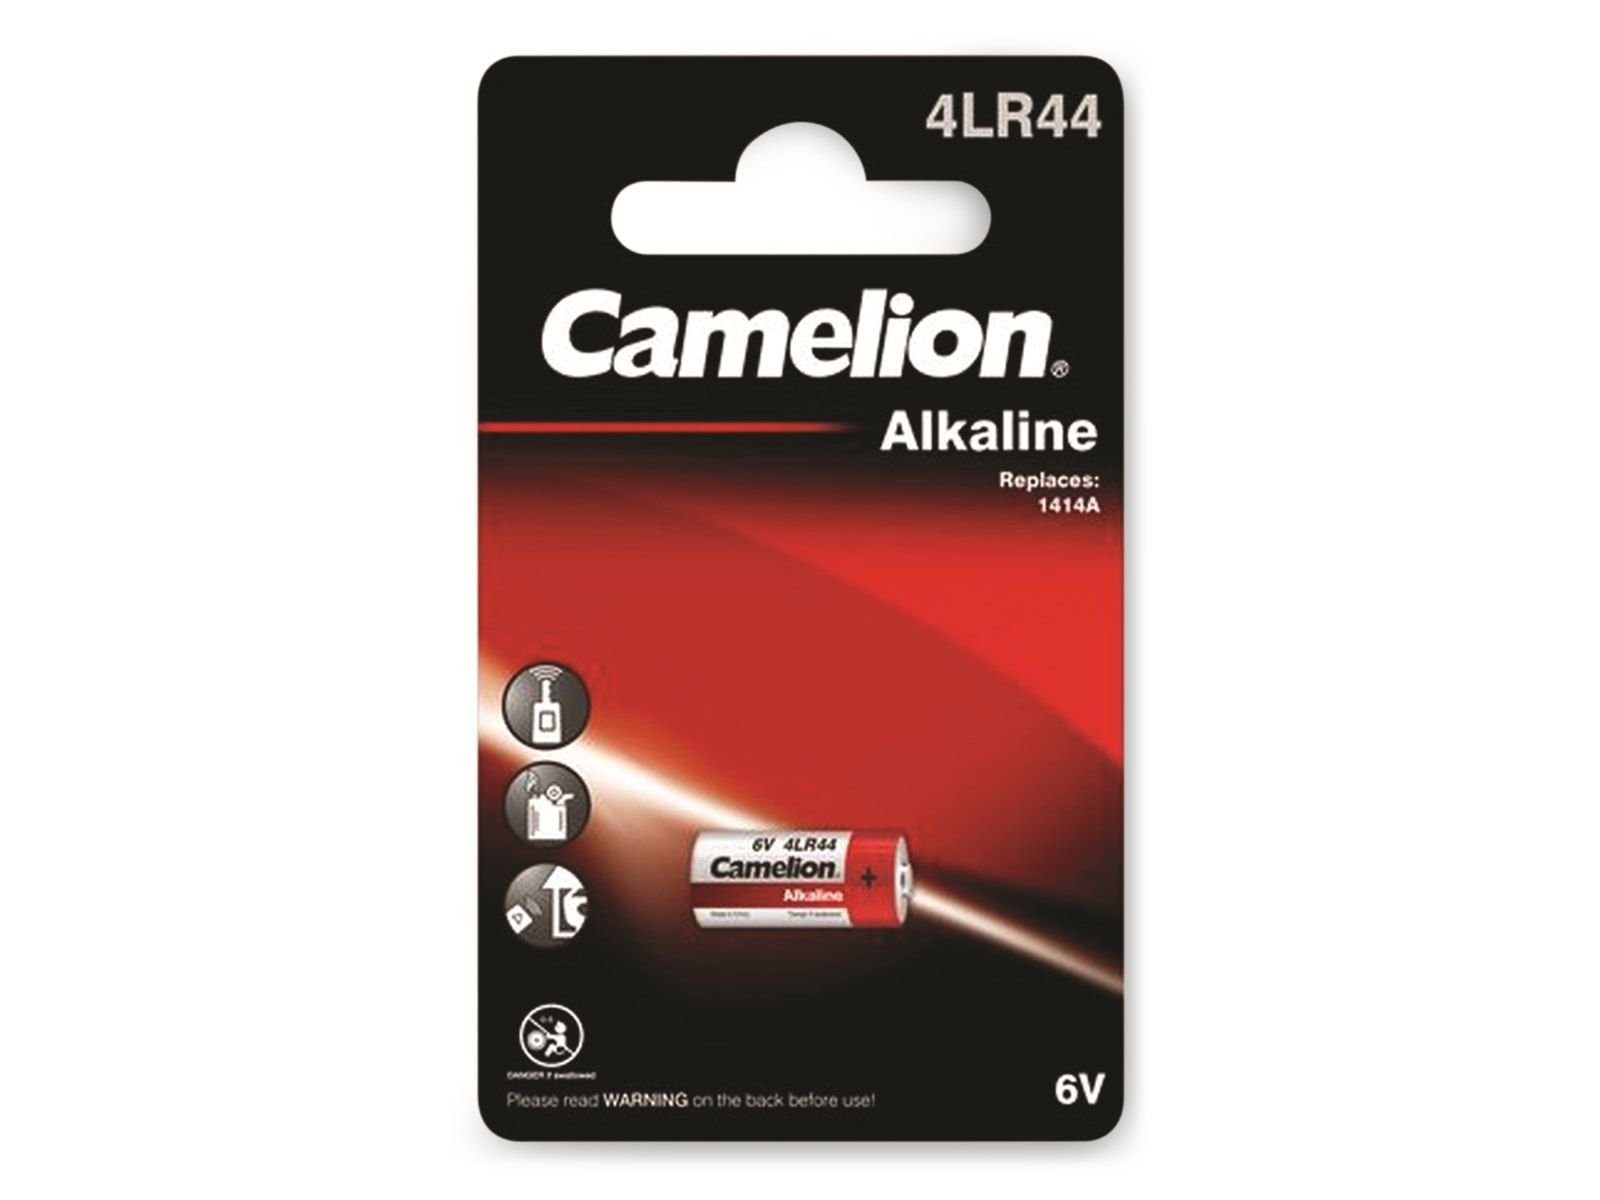 Camelion CAMELION Alkaline-Batterie 4LR44 1 Stück Batterie